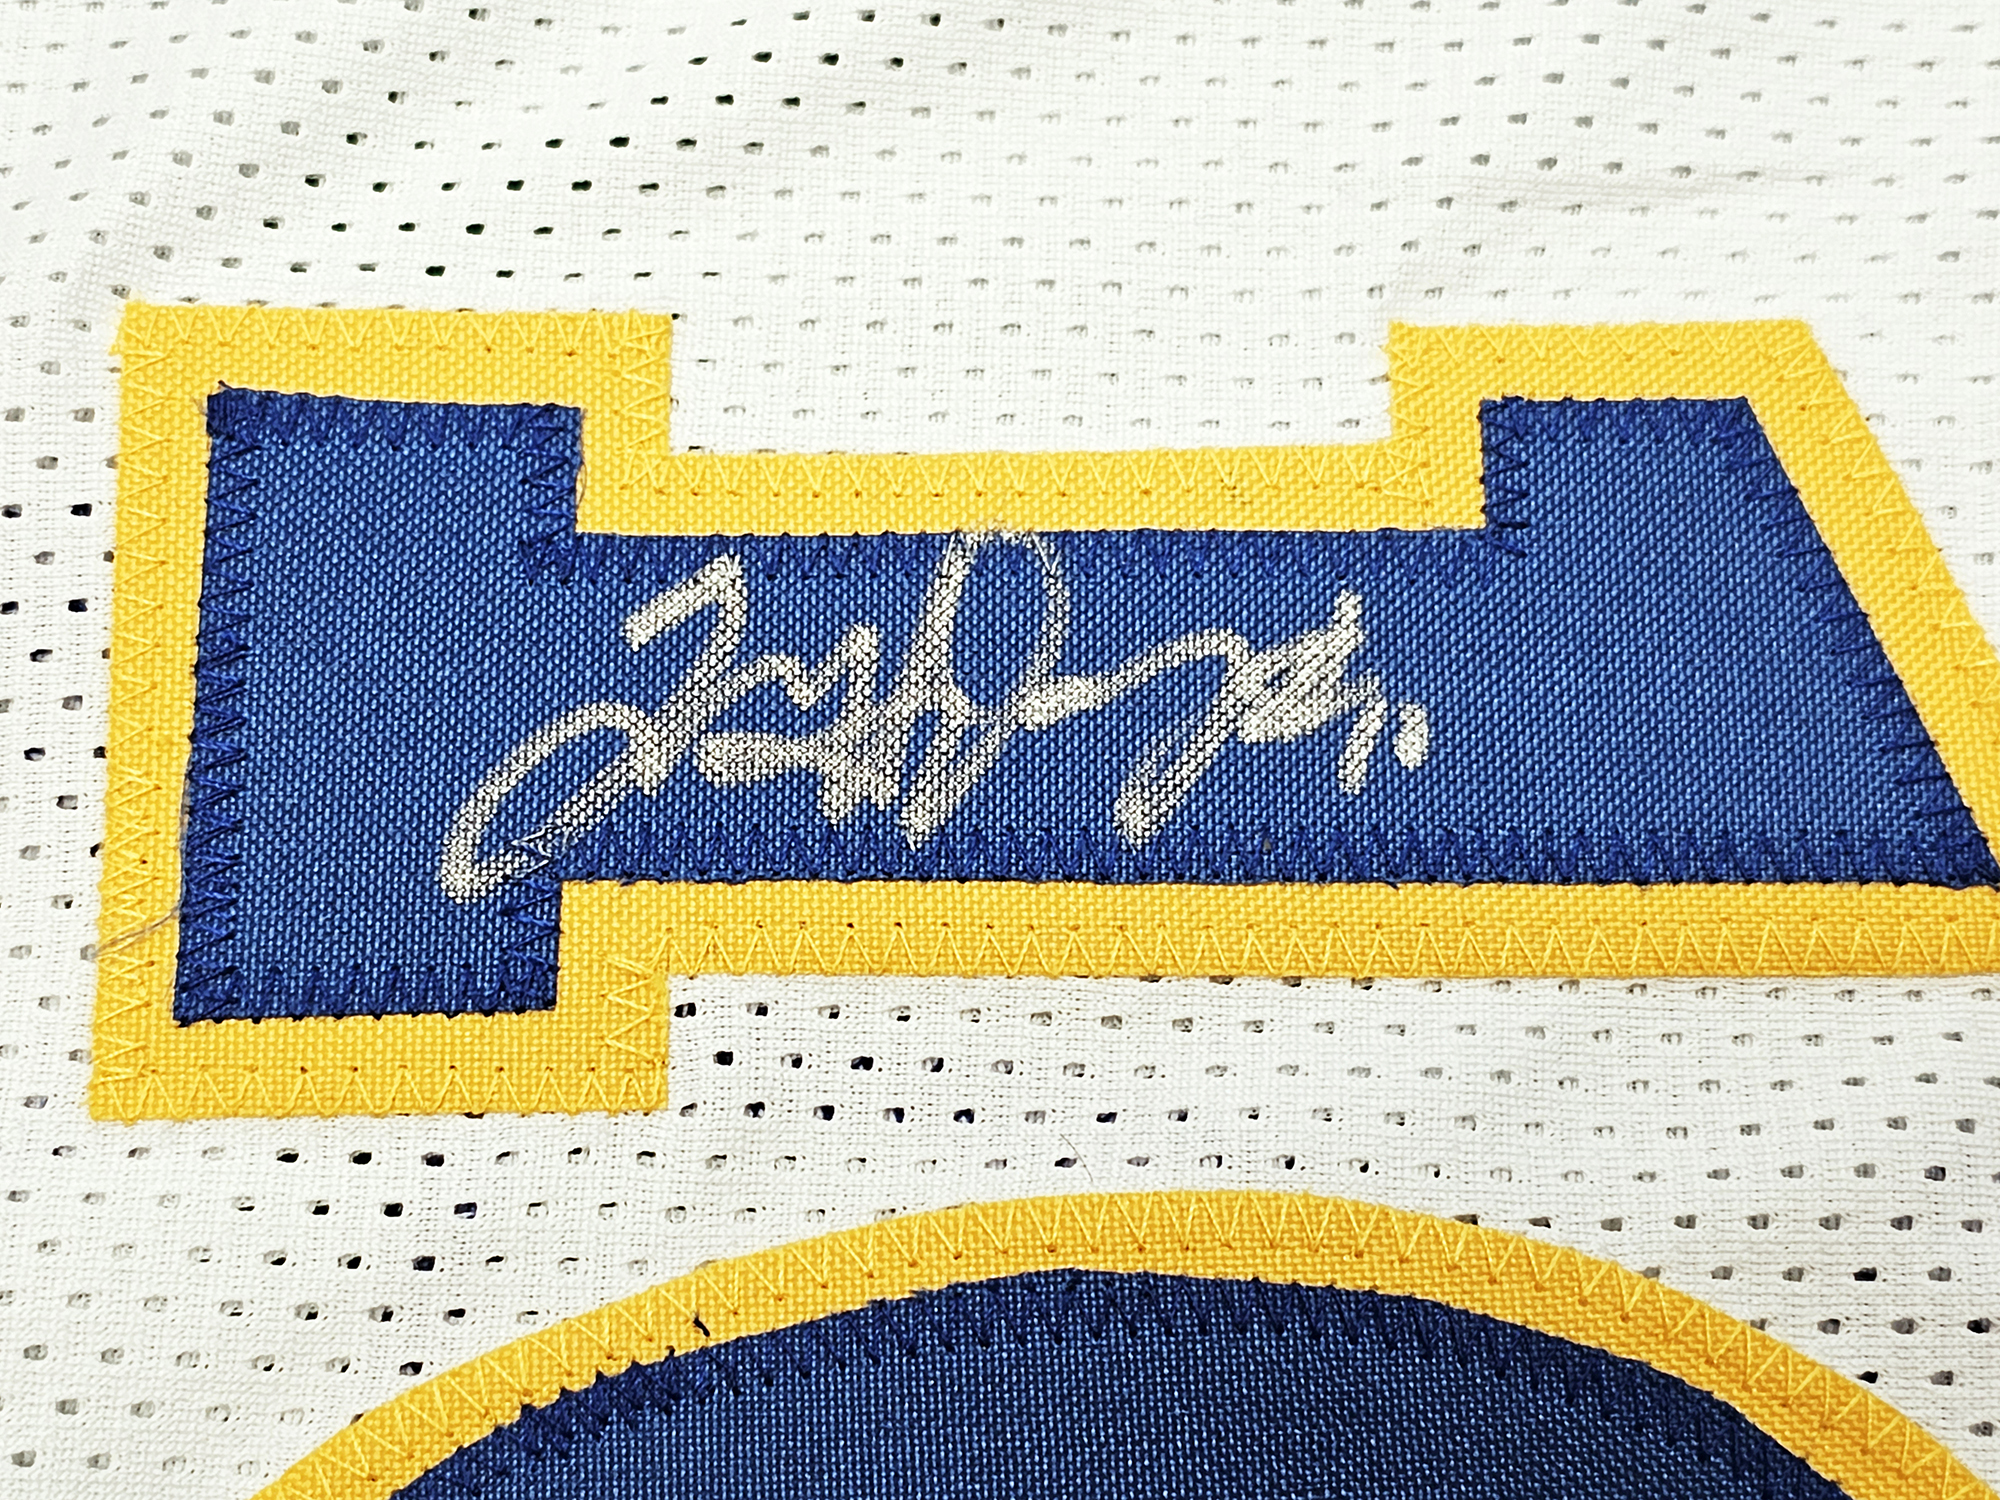 Golden State Warriors Chris Mullin, Tim Hardaway & Mitch Richmond  Autographed Yellow Jersey Run TMC Beckett BAS Witness Stock #216823